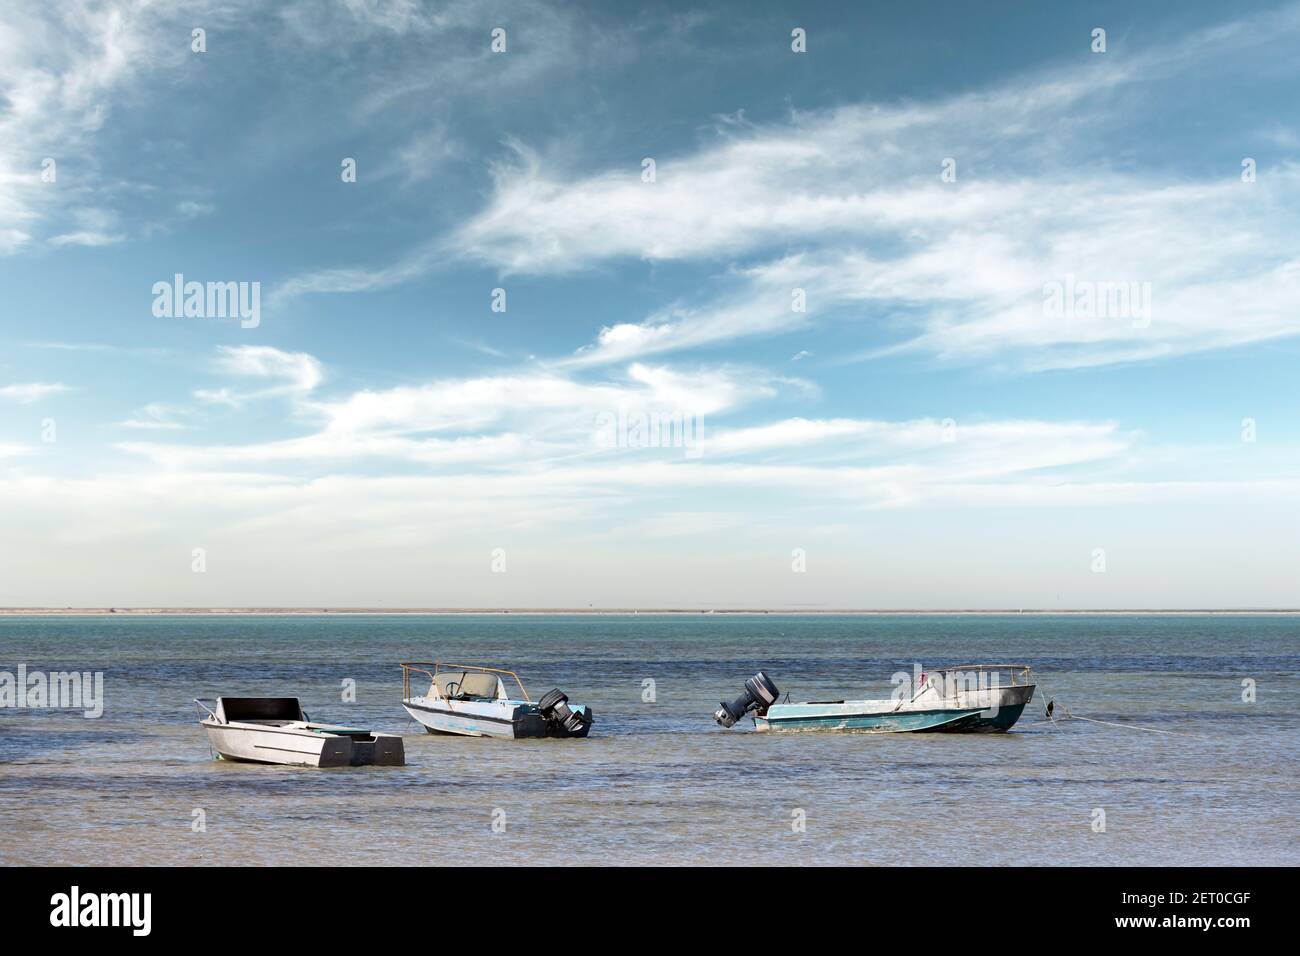 Vieux bateaux en métal sur l'eau de mer noire claire. Ciel bleu avec des nuages sur l'arrière-plan Banque D'Images